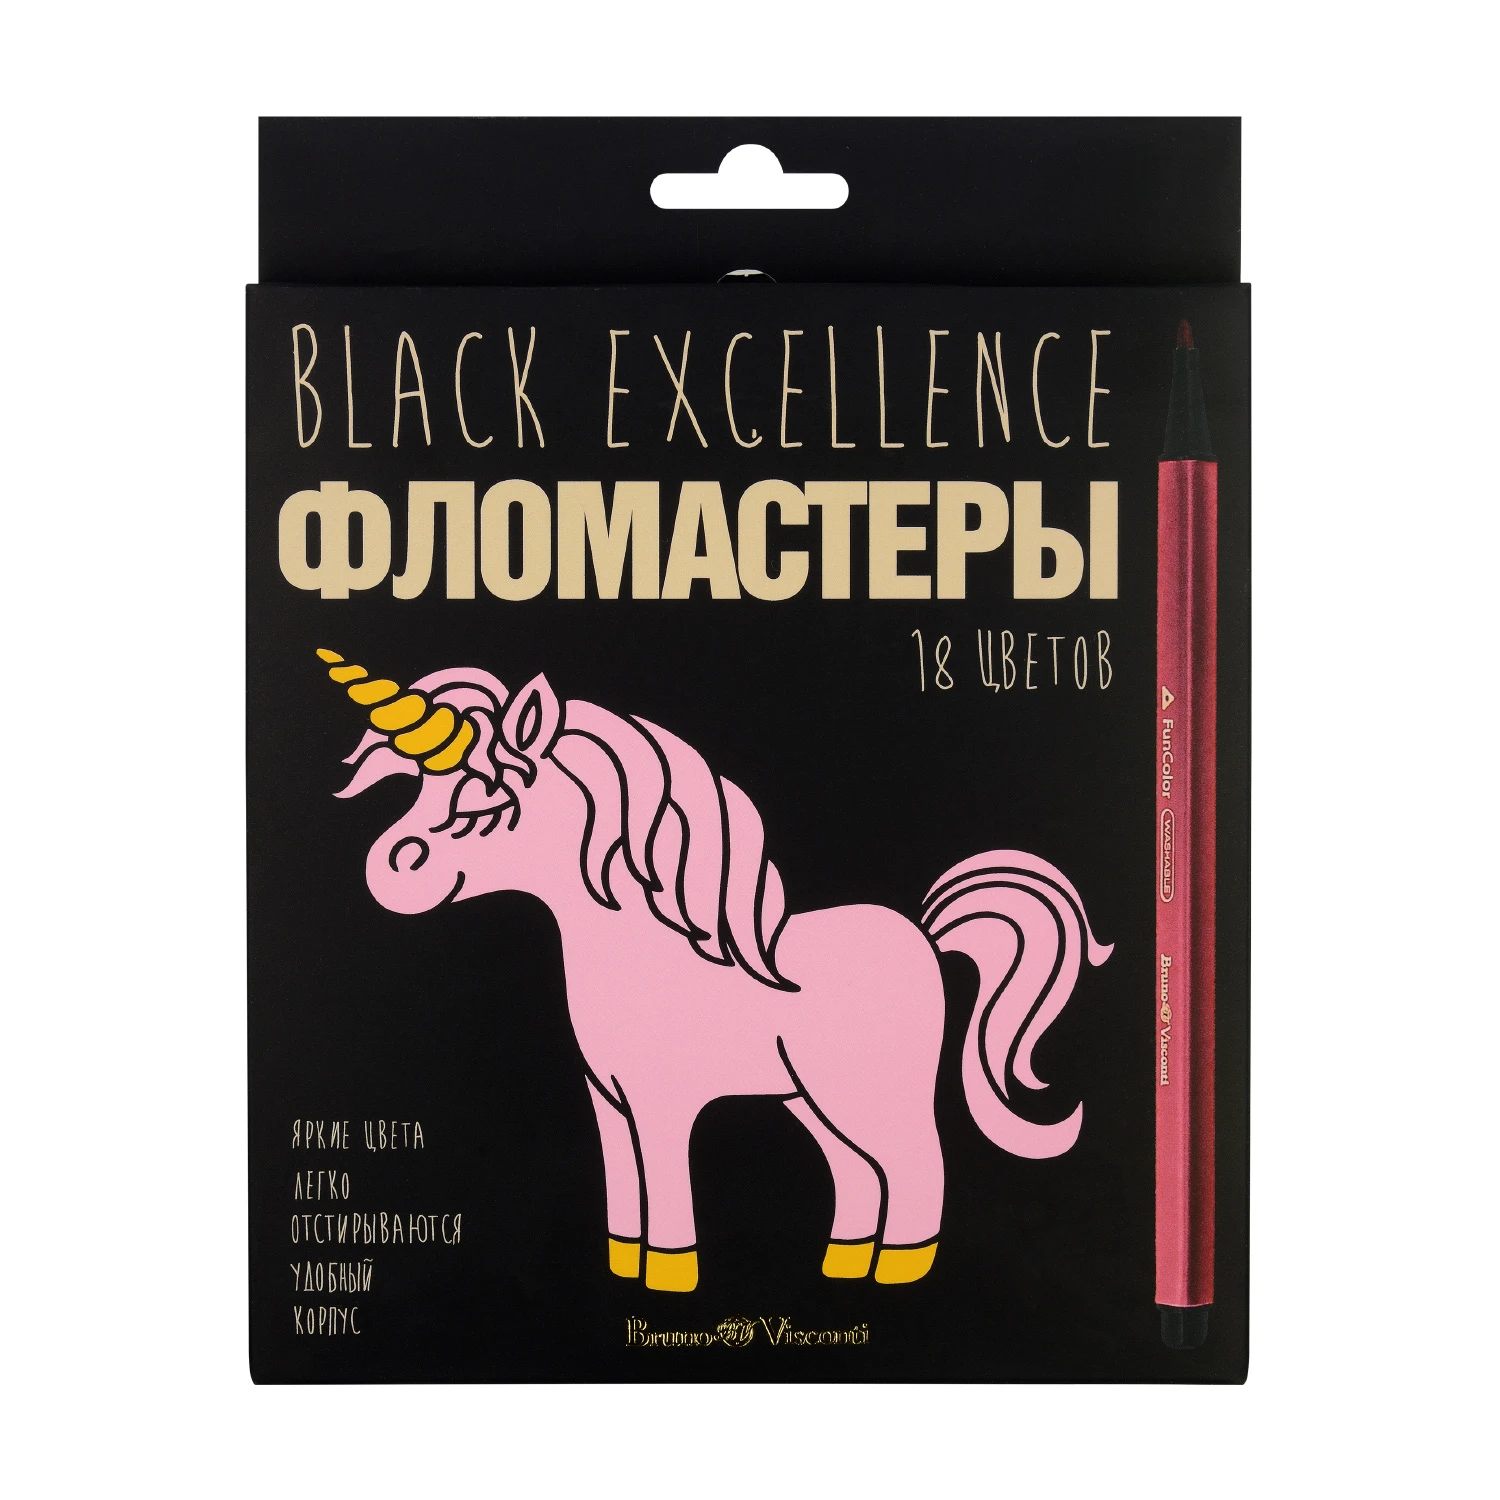 ФЛОМАСТЕРЫ "BLACK EXCELLENCE" 18 ЦВ. 4 ВИДА